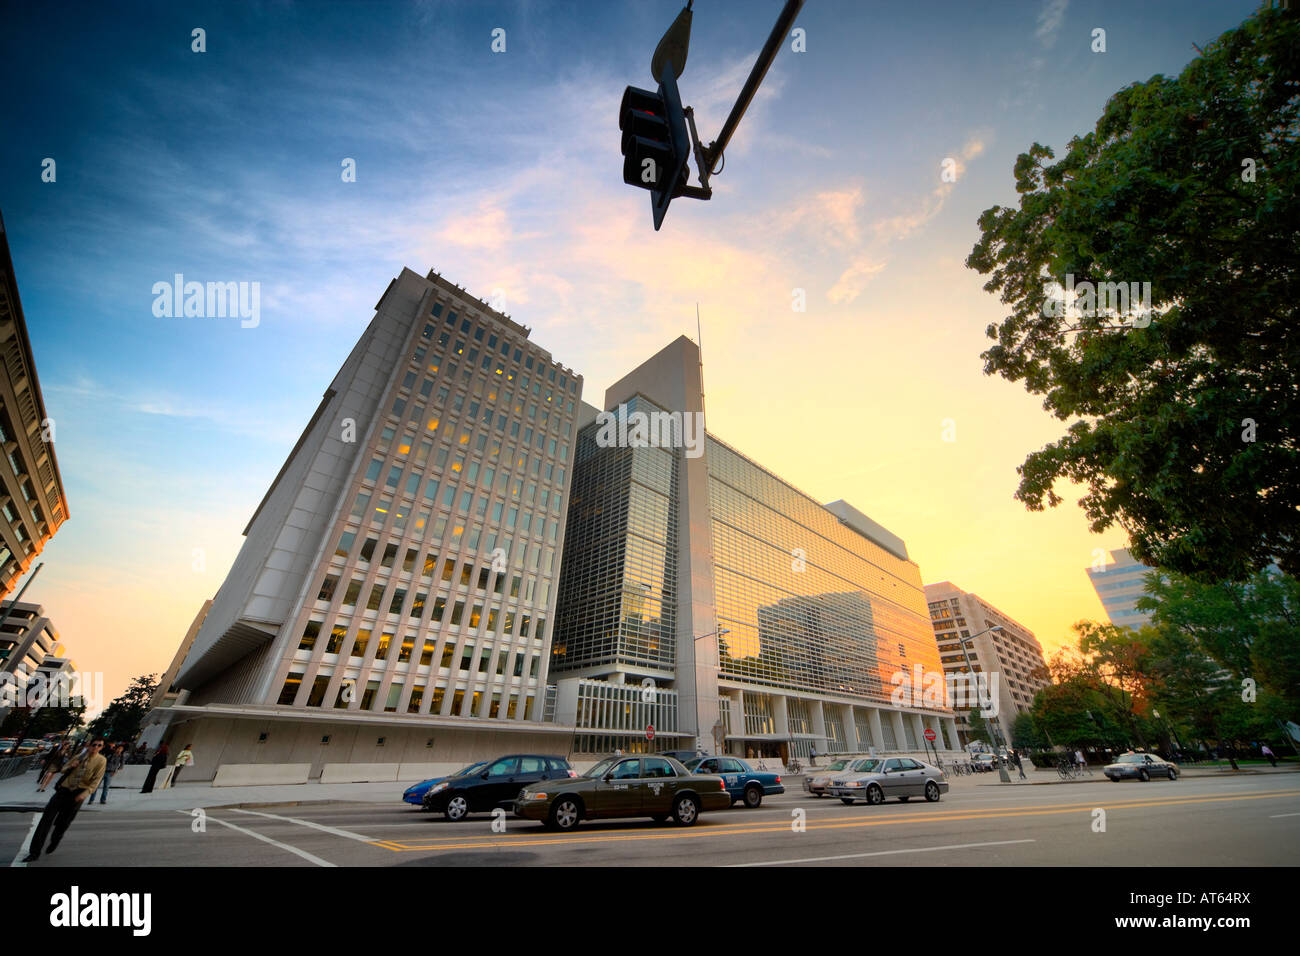 Le bâtiment principal du Groupe de la Banque mondiale, 1800 H Street NW, Washington Avenue, Washington DC, USA. Banque D'Images